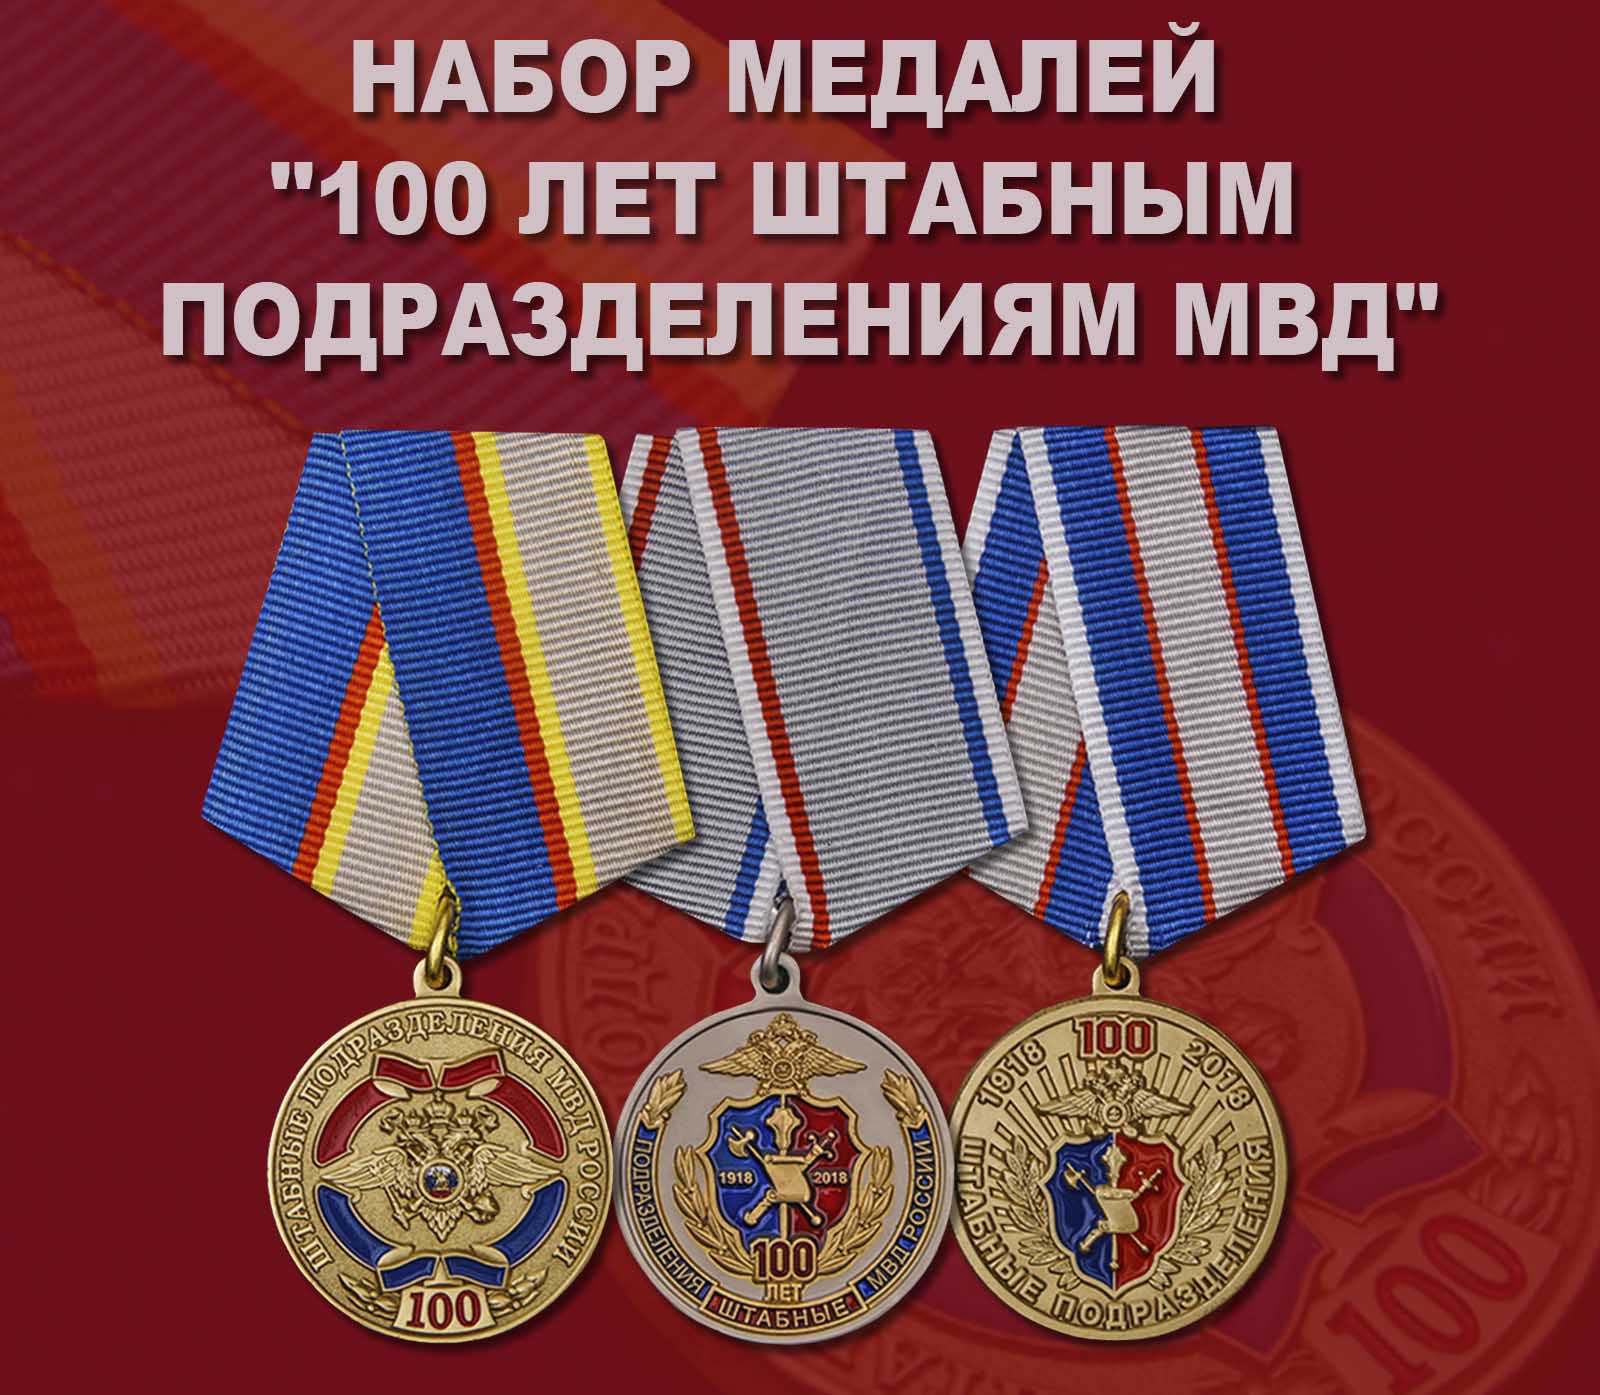 Купить набор медалей "100 лет штабным подразделениям МВД"